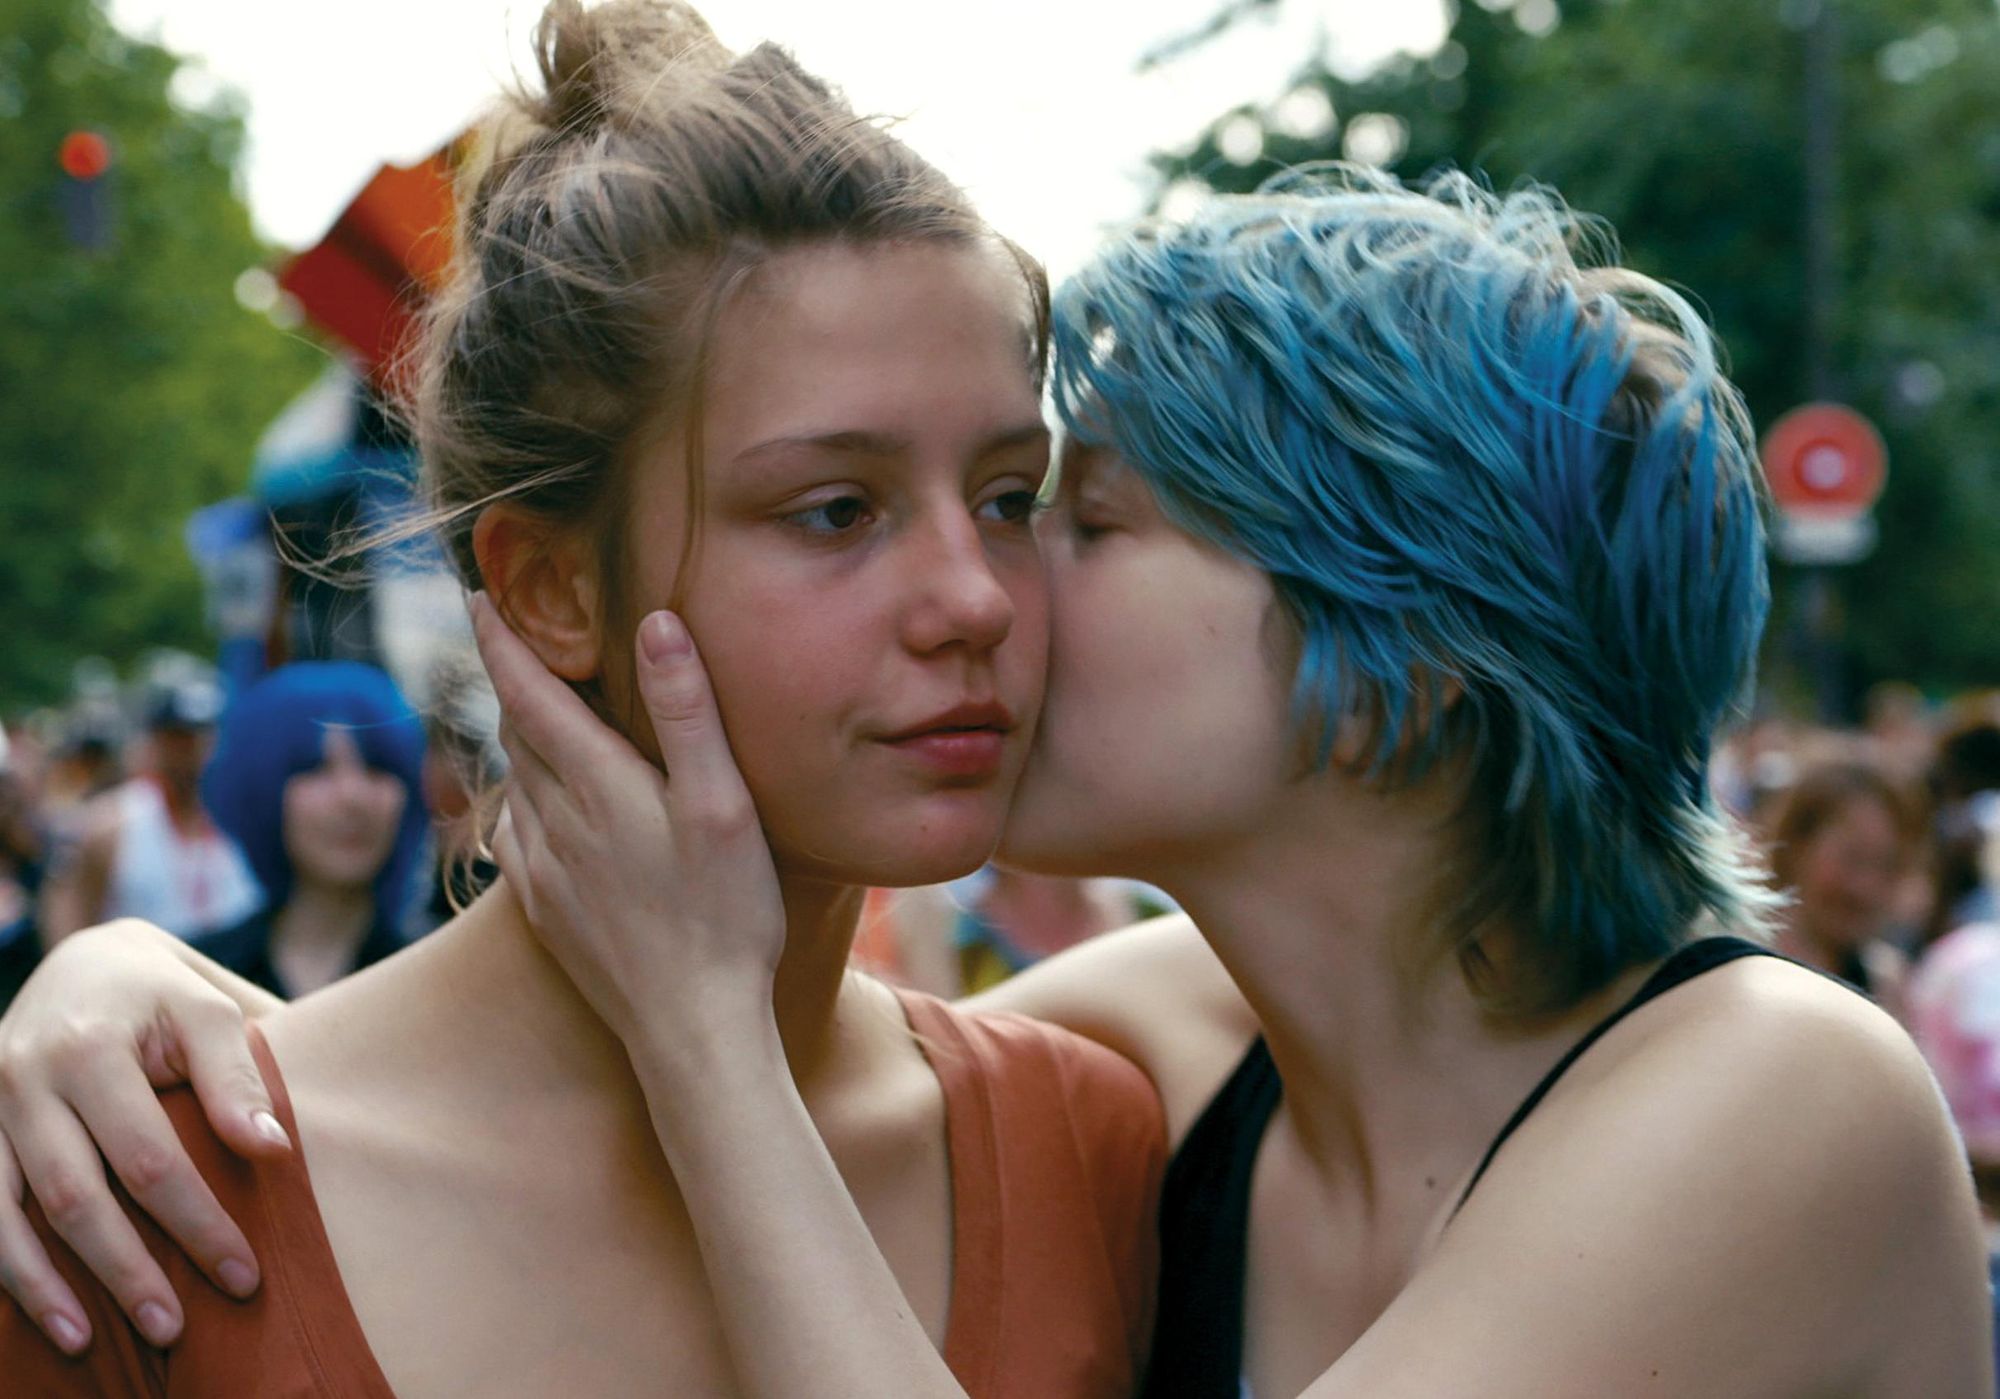 Lesbian Force Kiss - Lesbian films need female directors